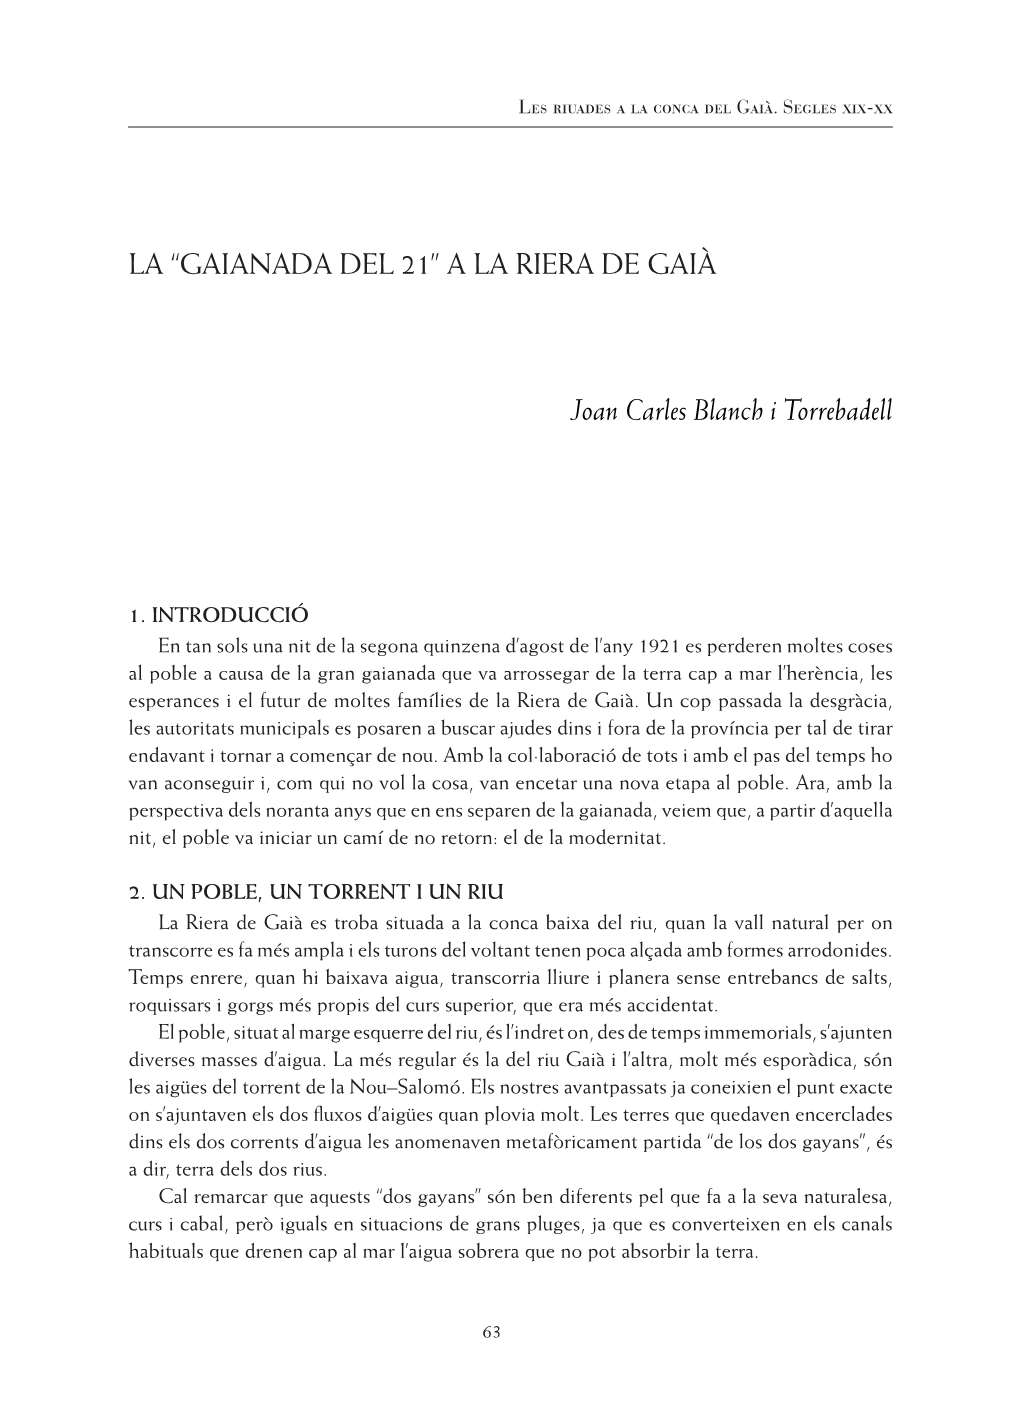 LA “GAIANADA DEL 21” a LA RIERA DE GAIÀ Joan Carles Blanch I Torrebadell